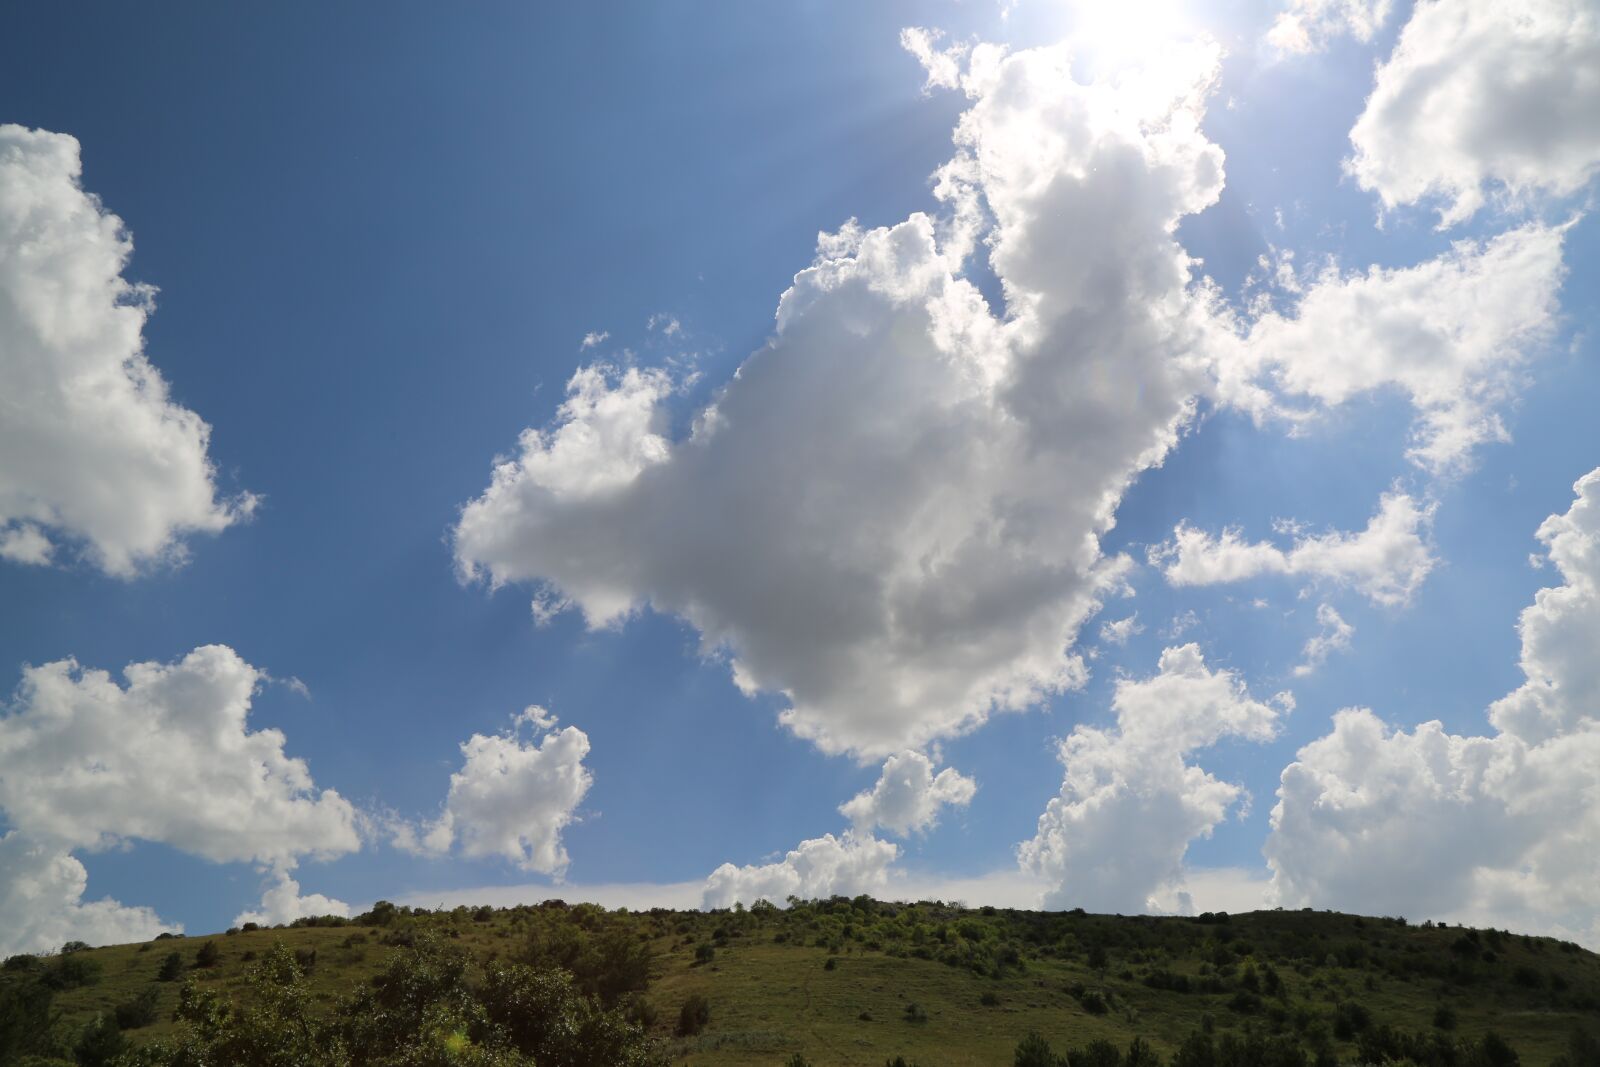 Canon EOS 5D Mark III sample photo. Cloud, sky, earth photography